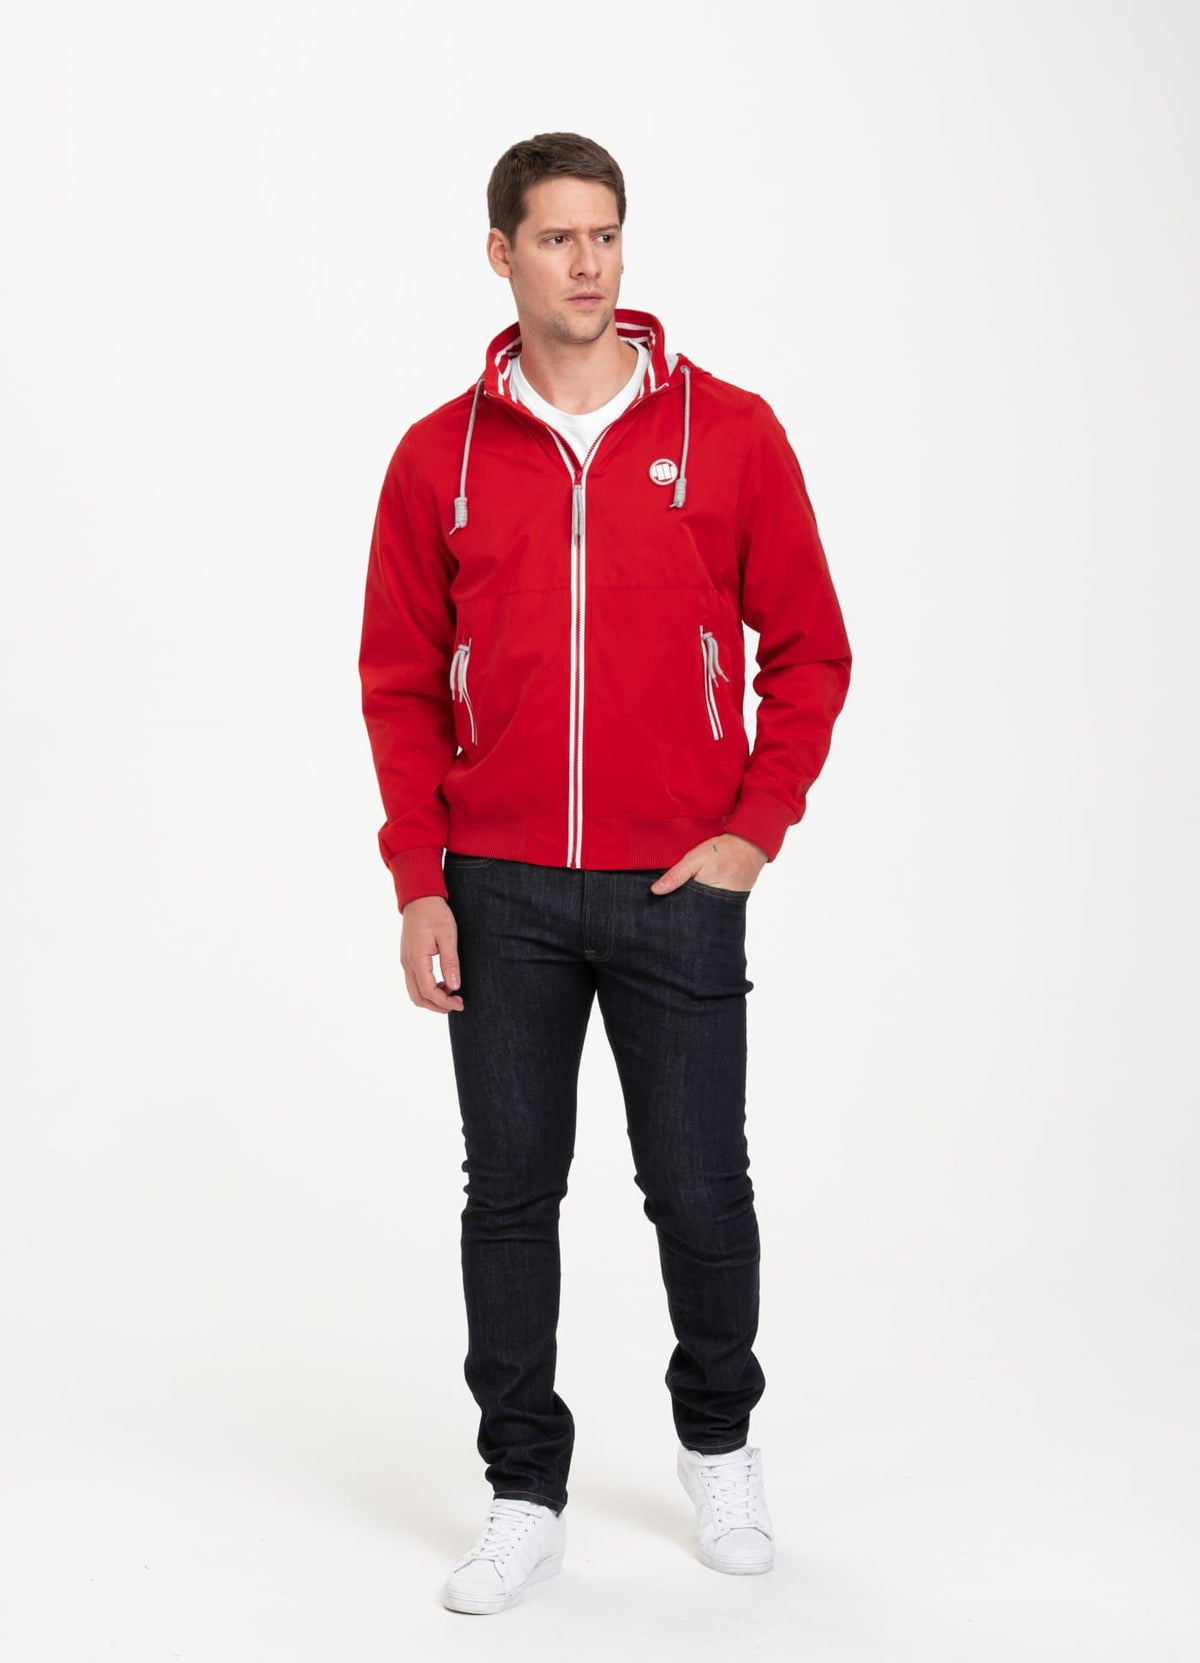 Jacket DODGE Red - Pitbull West Coast International Store 